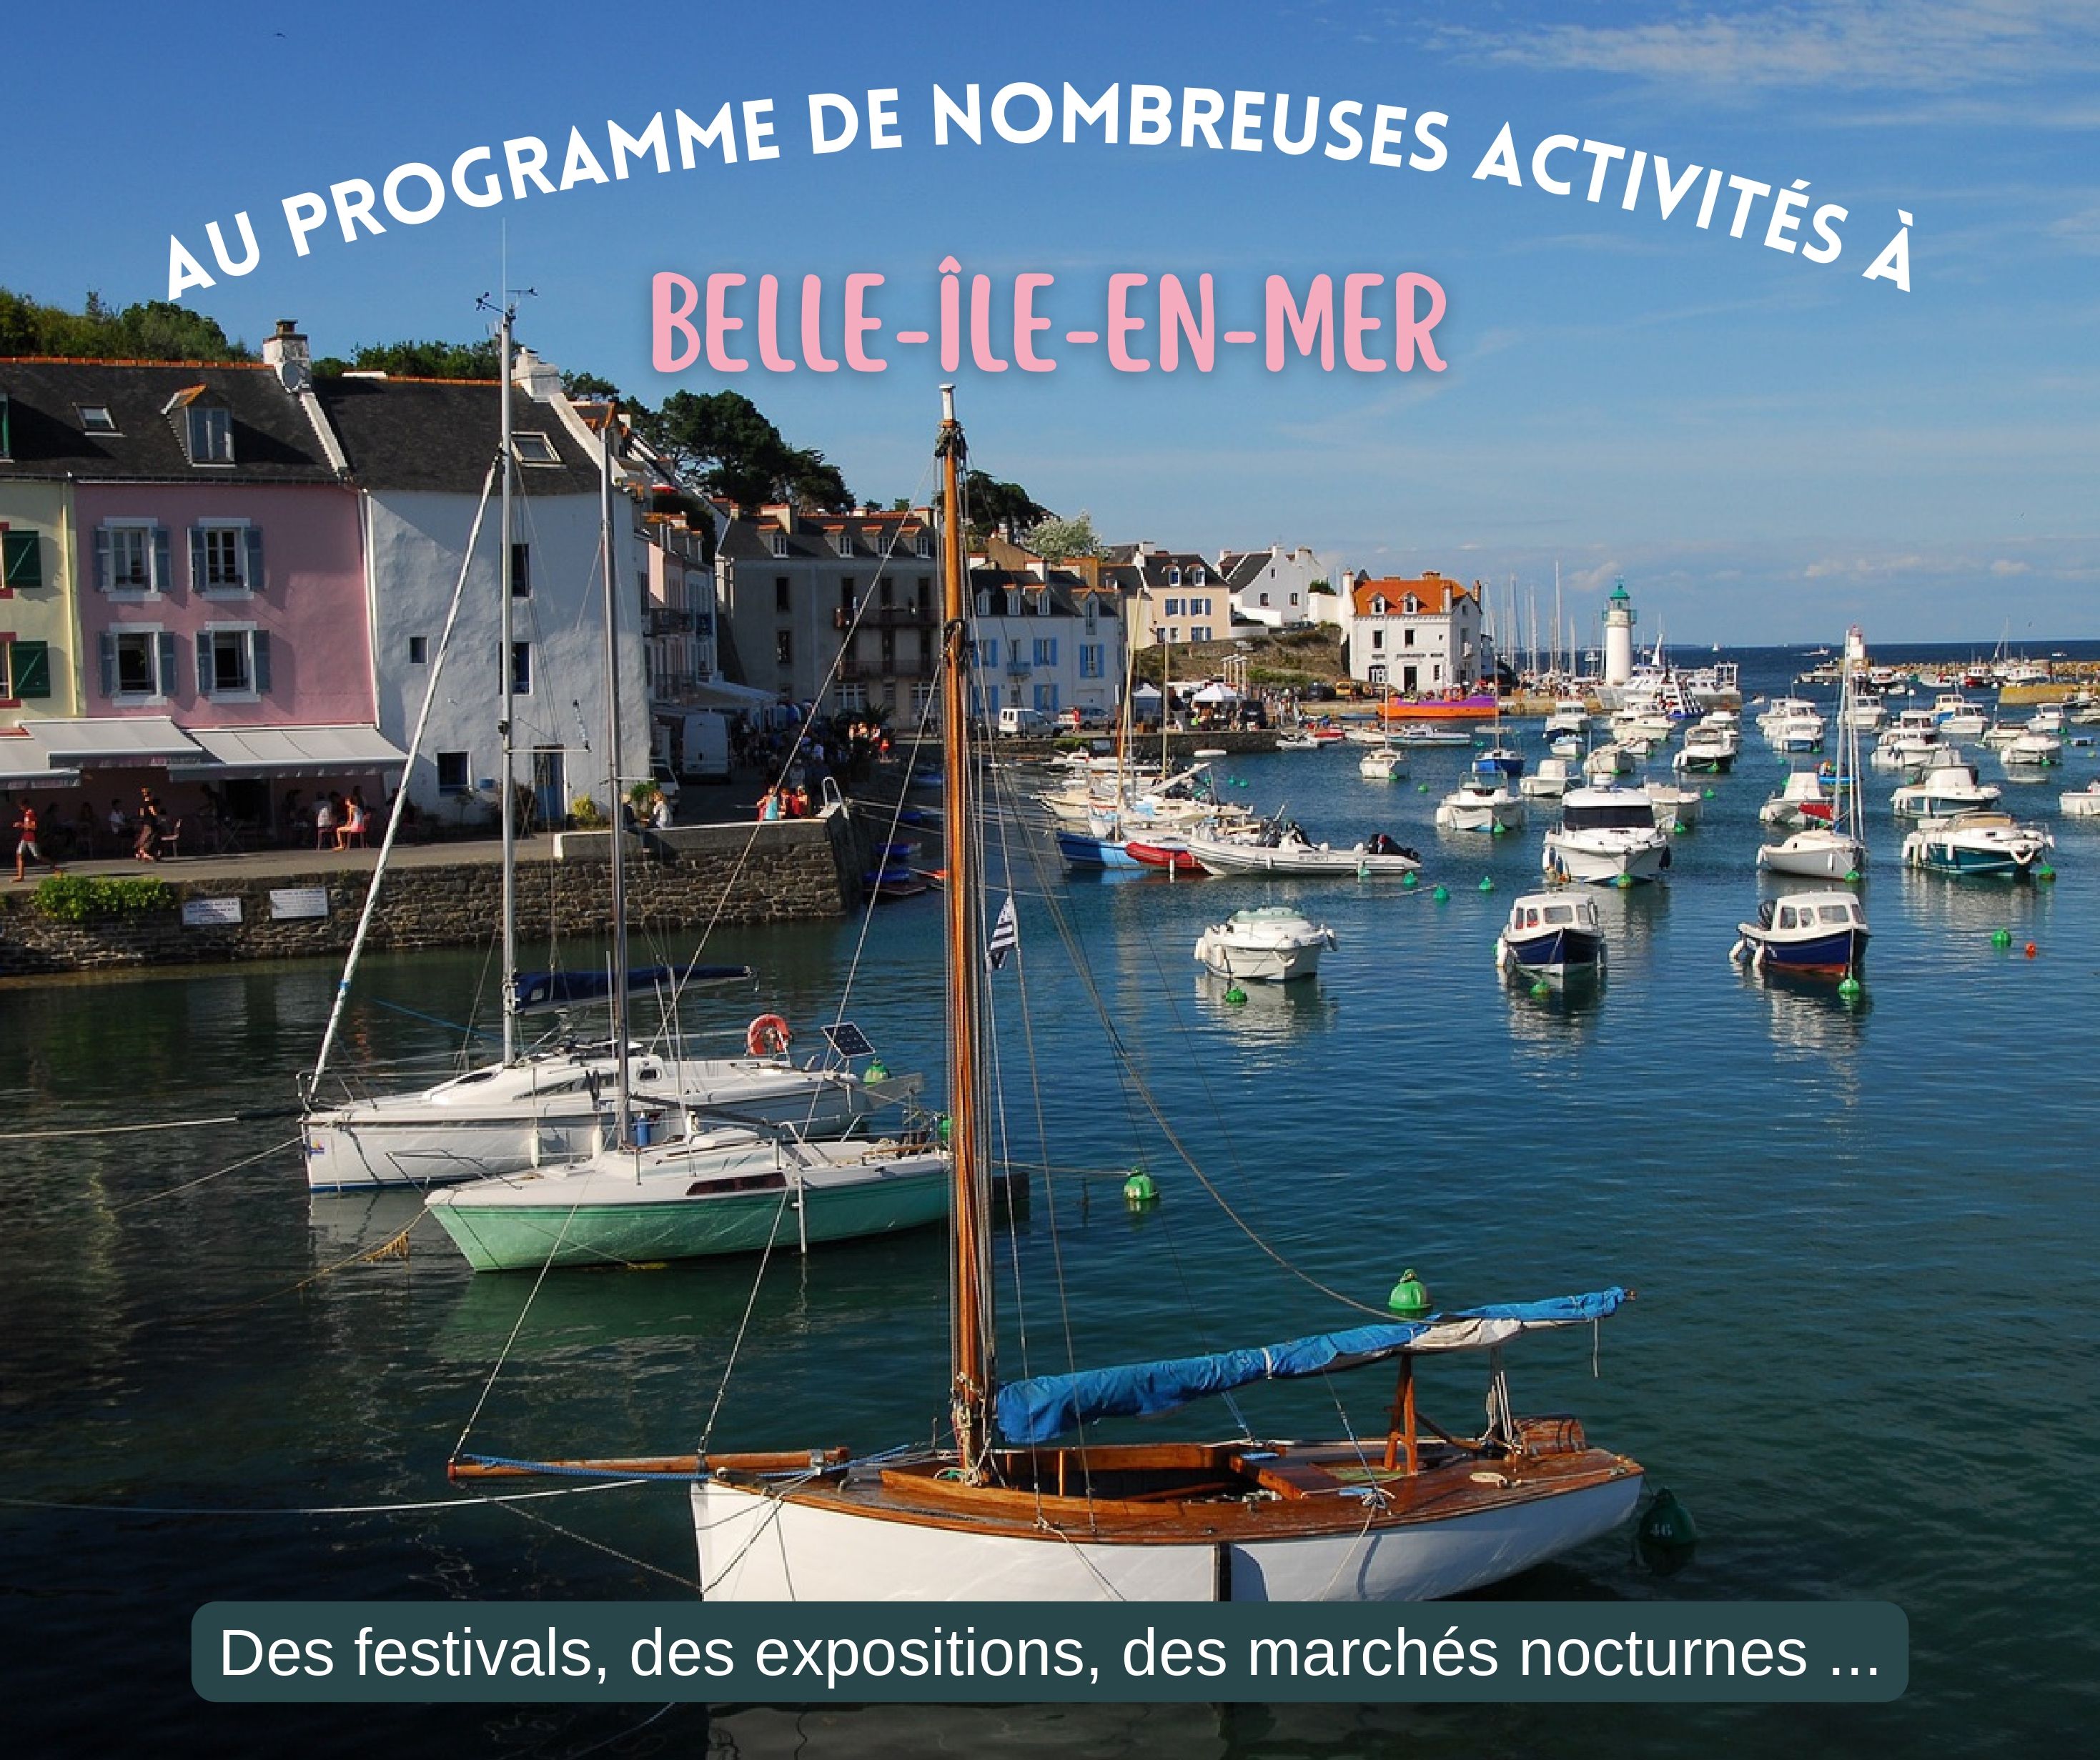 Plusieurs activités et événements à prévoir cet été sur Belle-Île-en-Mer !